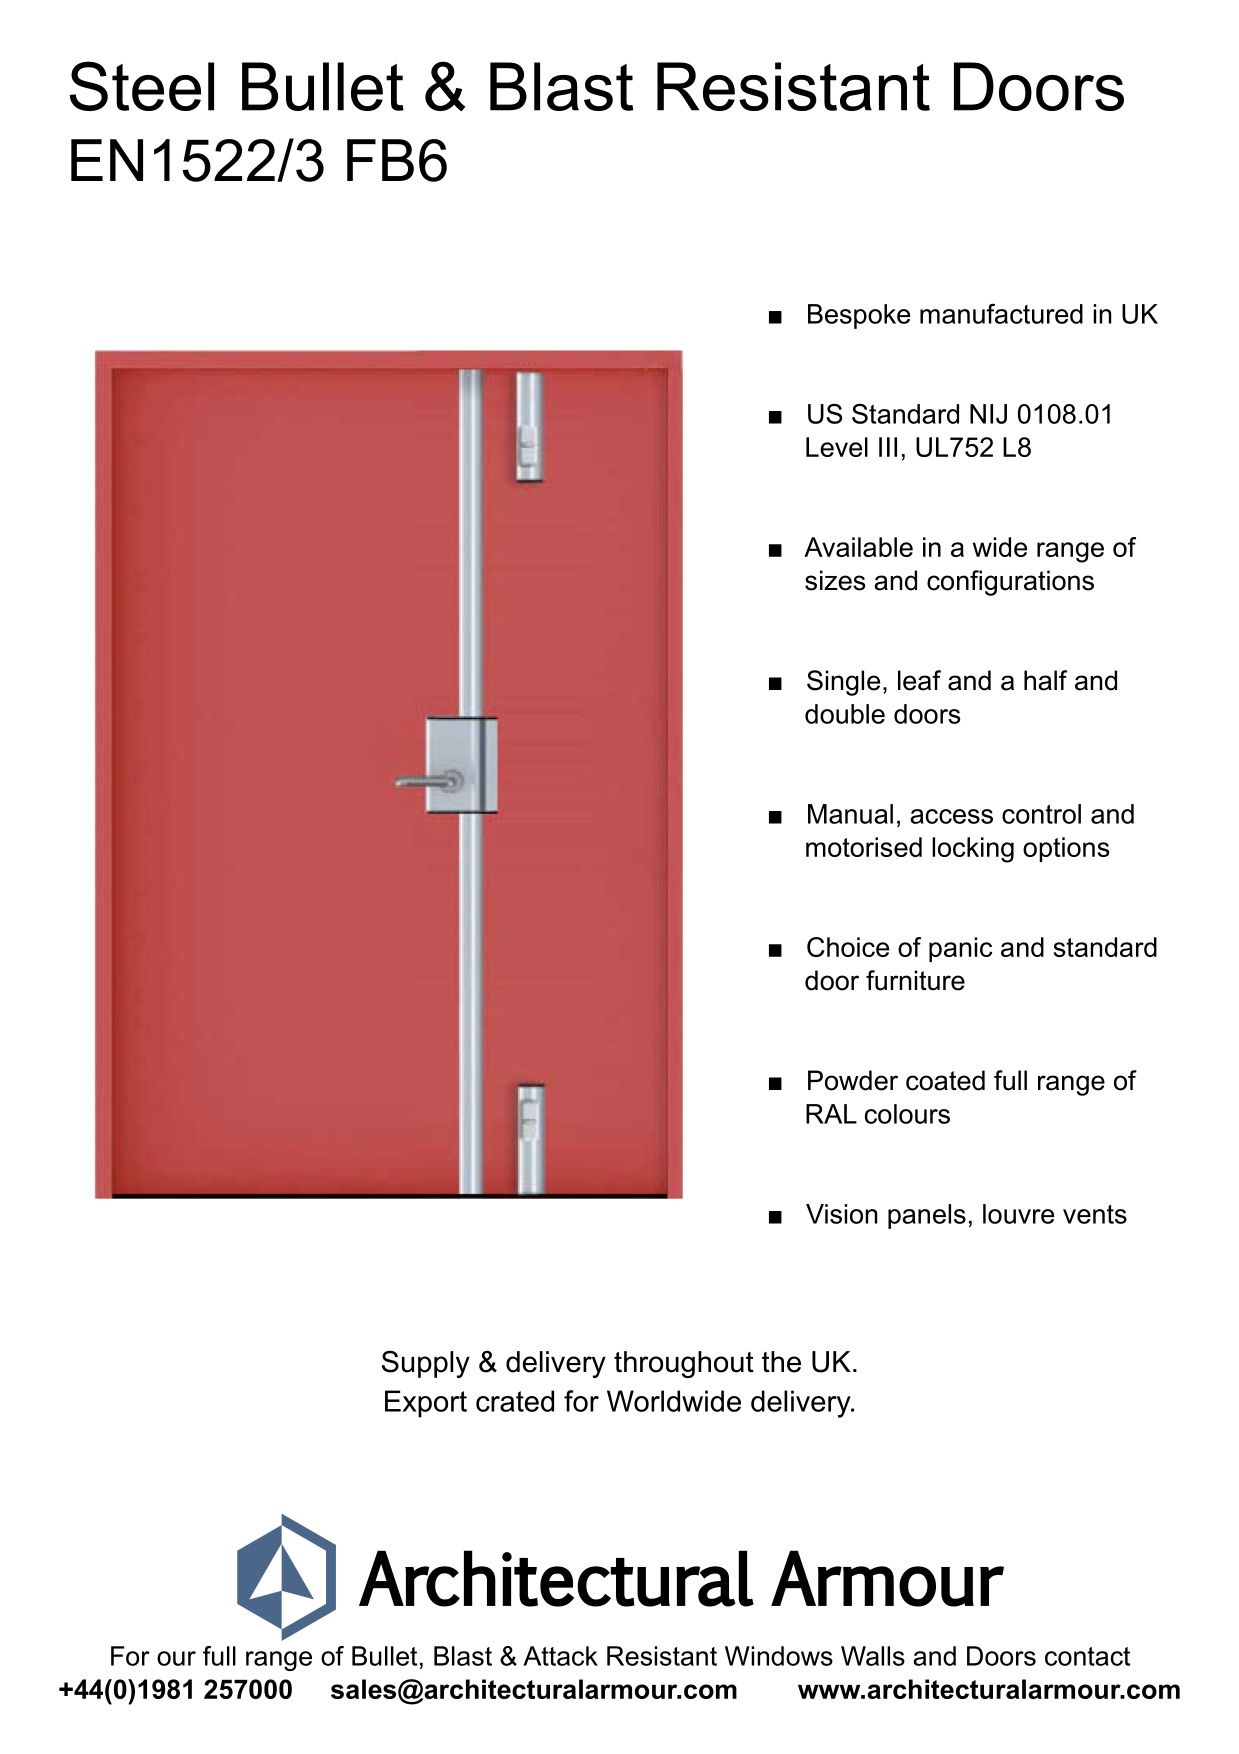 Blast-and-Ballistic-Resistant-metal-Doors-EN1522-3-FB6